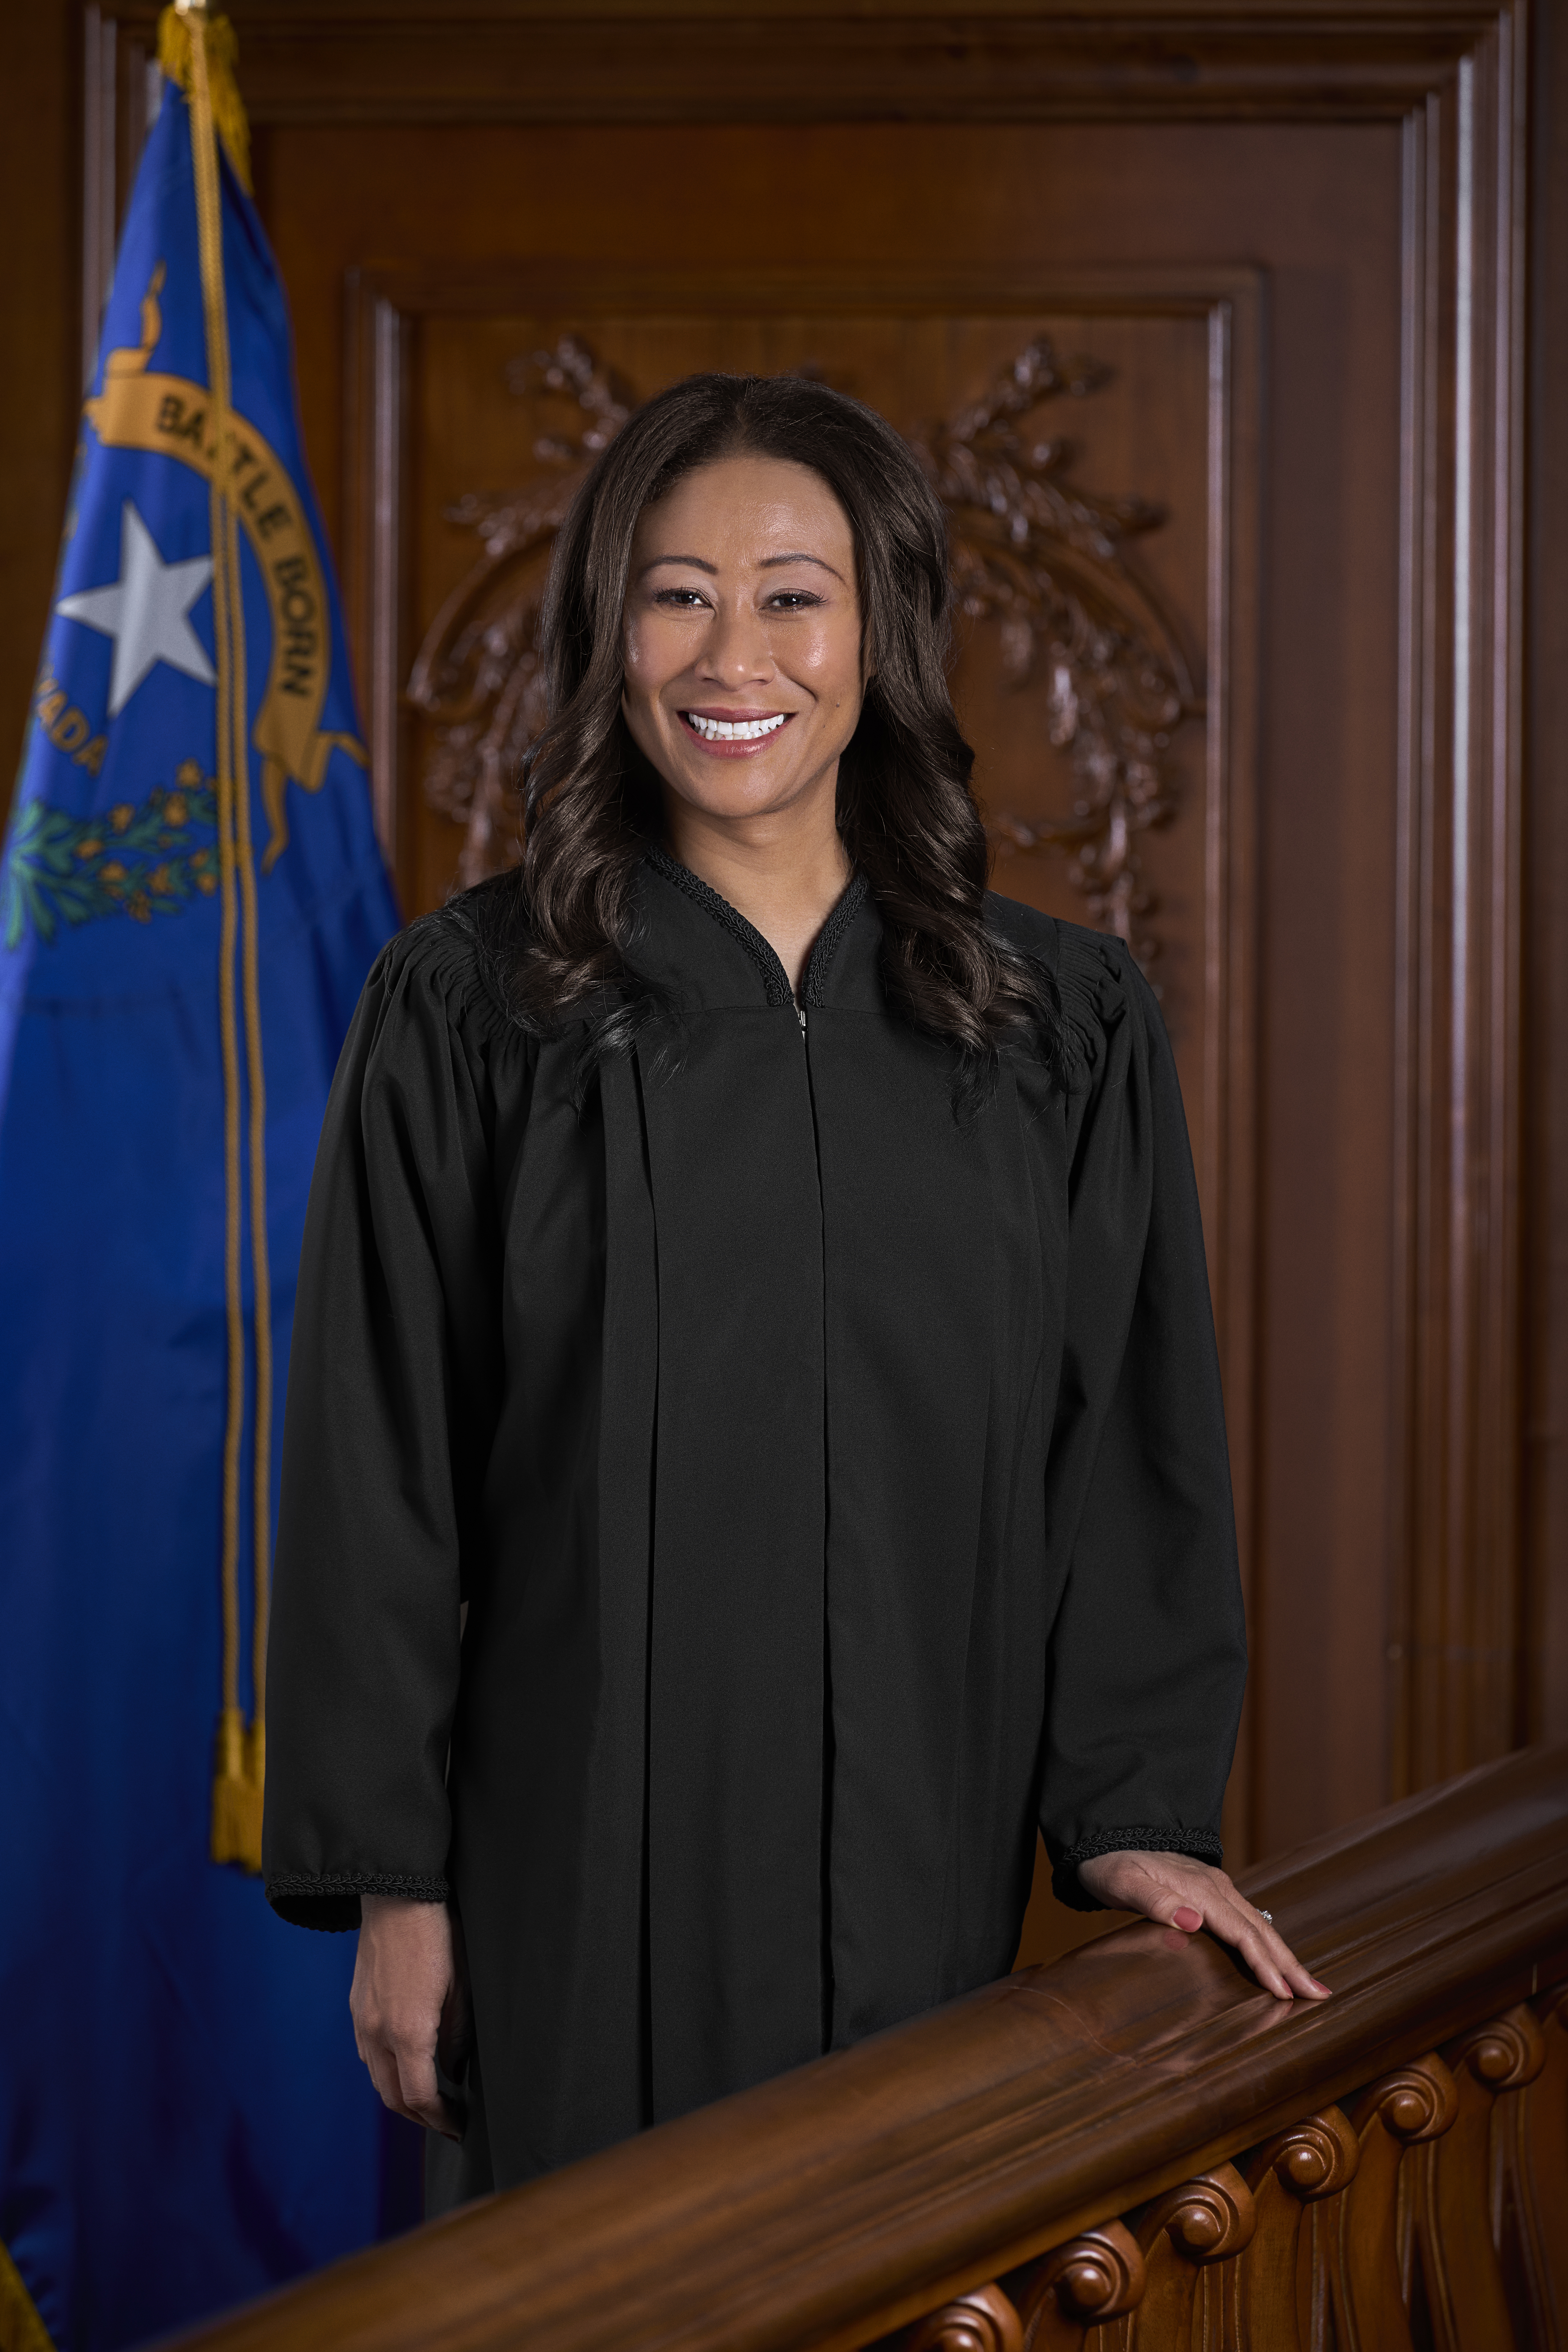 Justice Patricia Lee